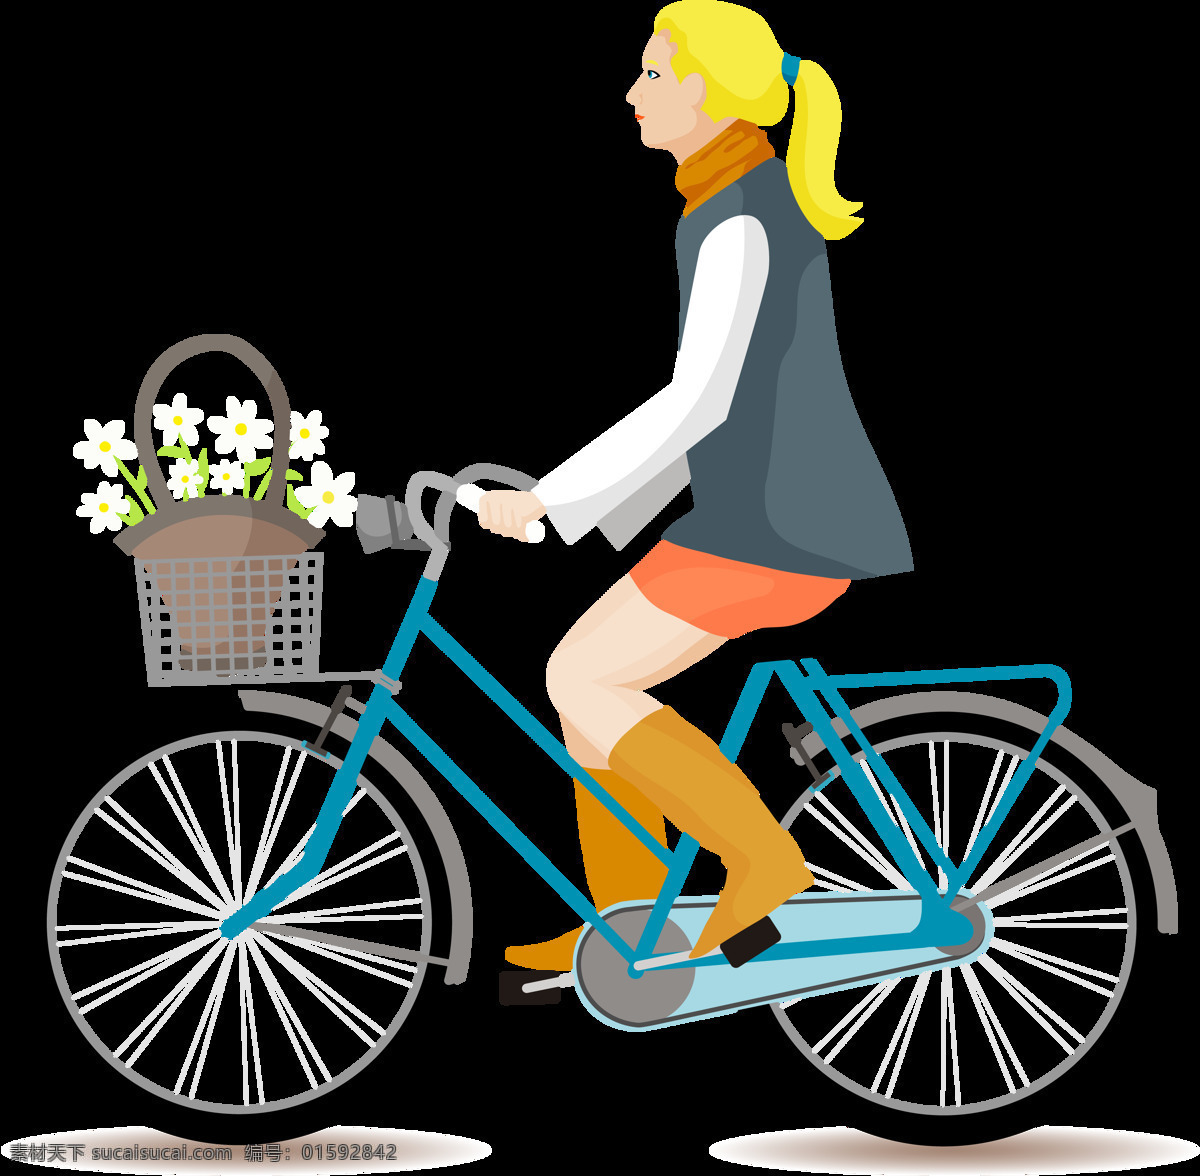 女孩 骑 自行车 插画 免 抠 透明 图 层 共享单车 女式单车 男式单车 电动车 绿色低碳 绿色环保 环保电动车 健身单车 摩拜 ofo单车 小蓝单车 双人单车 多人单车